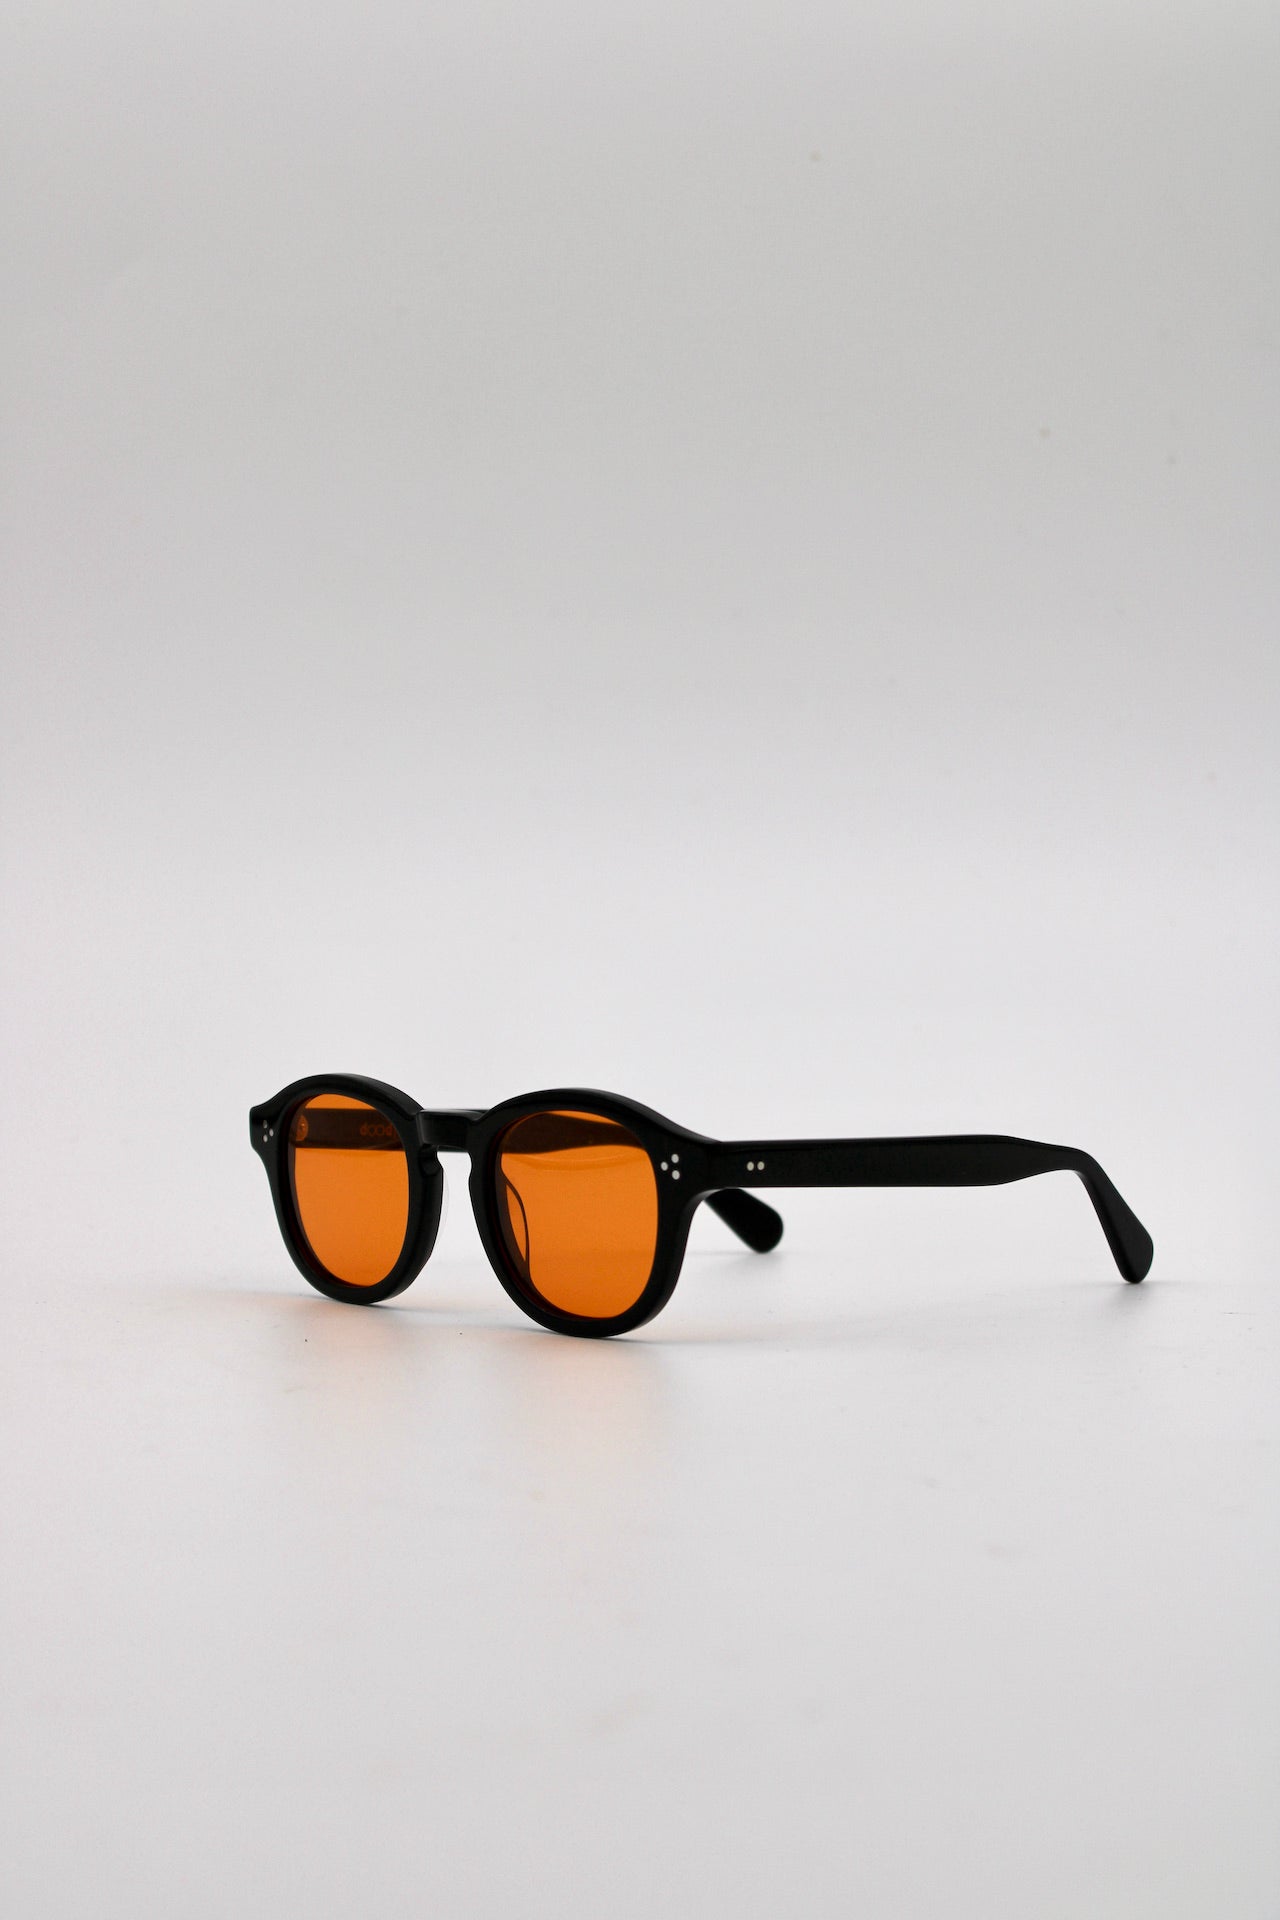 105 Originals Bold Black Frame with Unique Orange Lenses